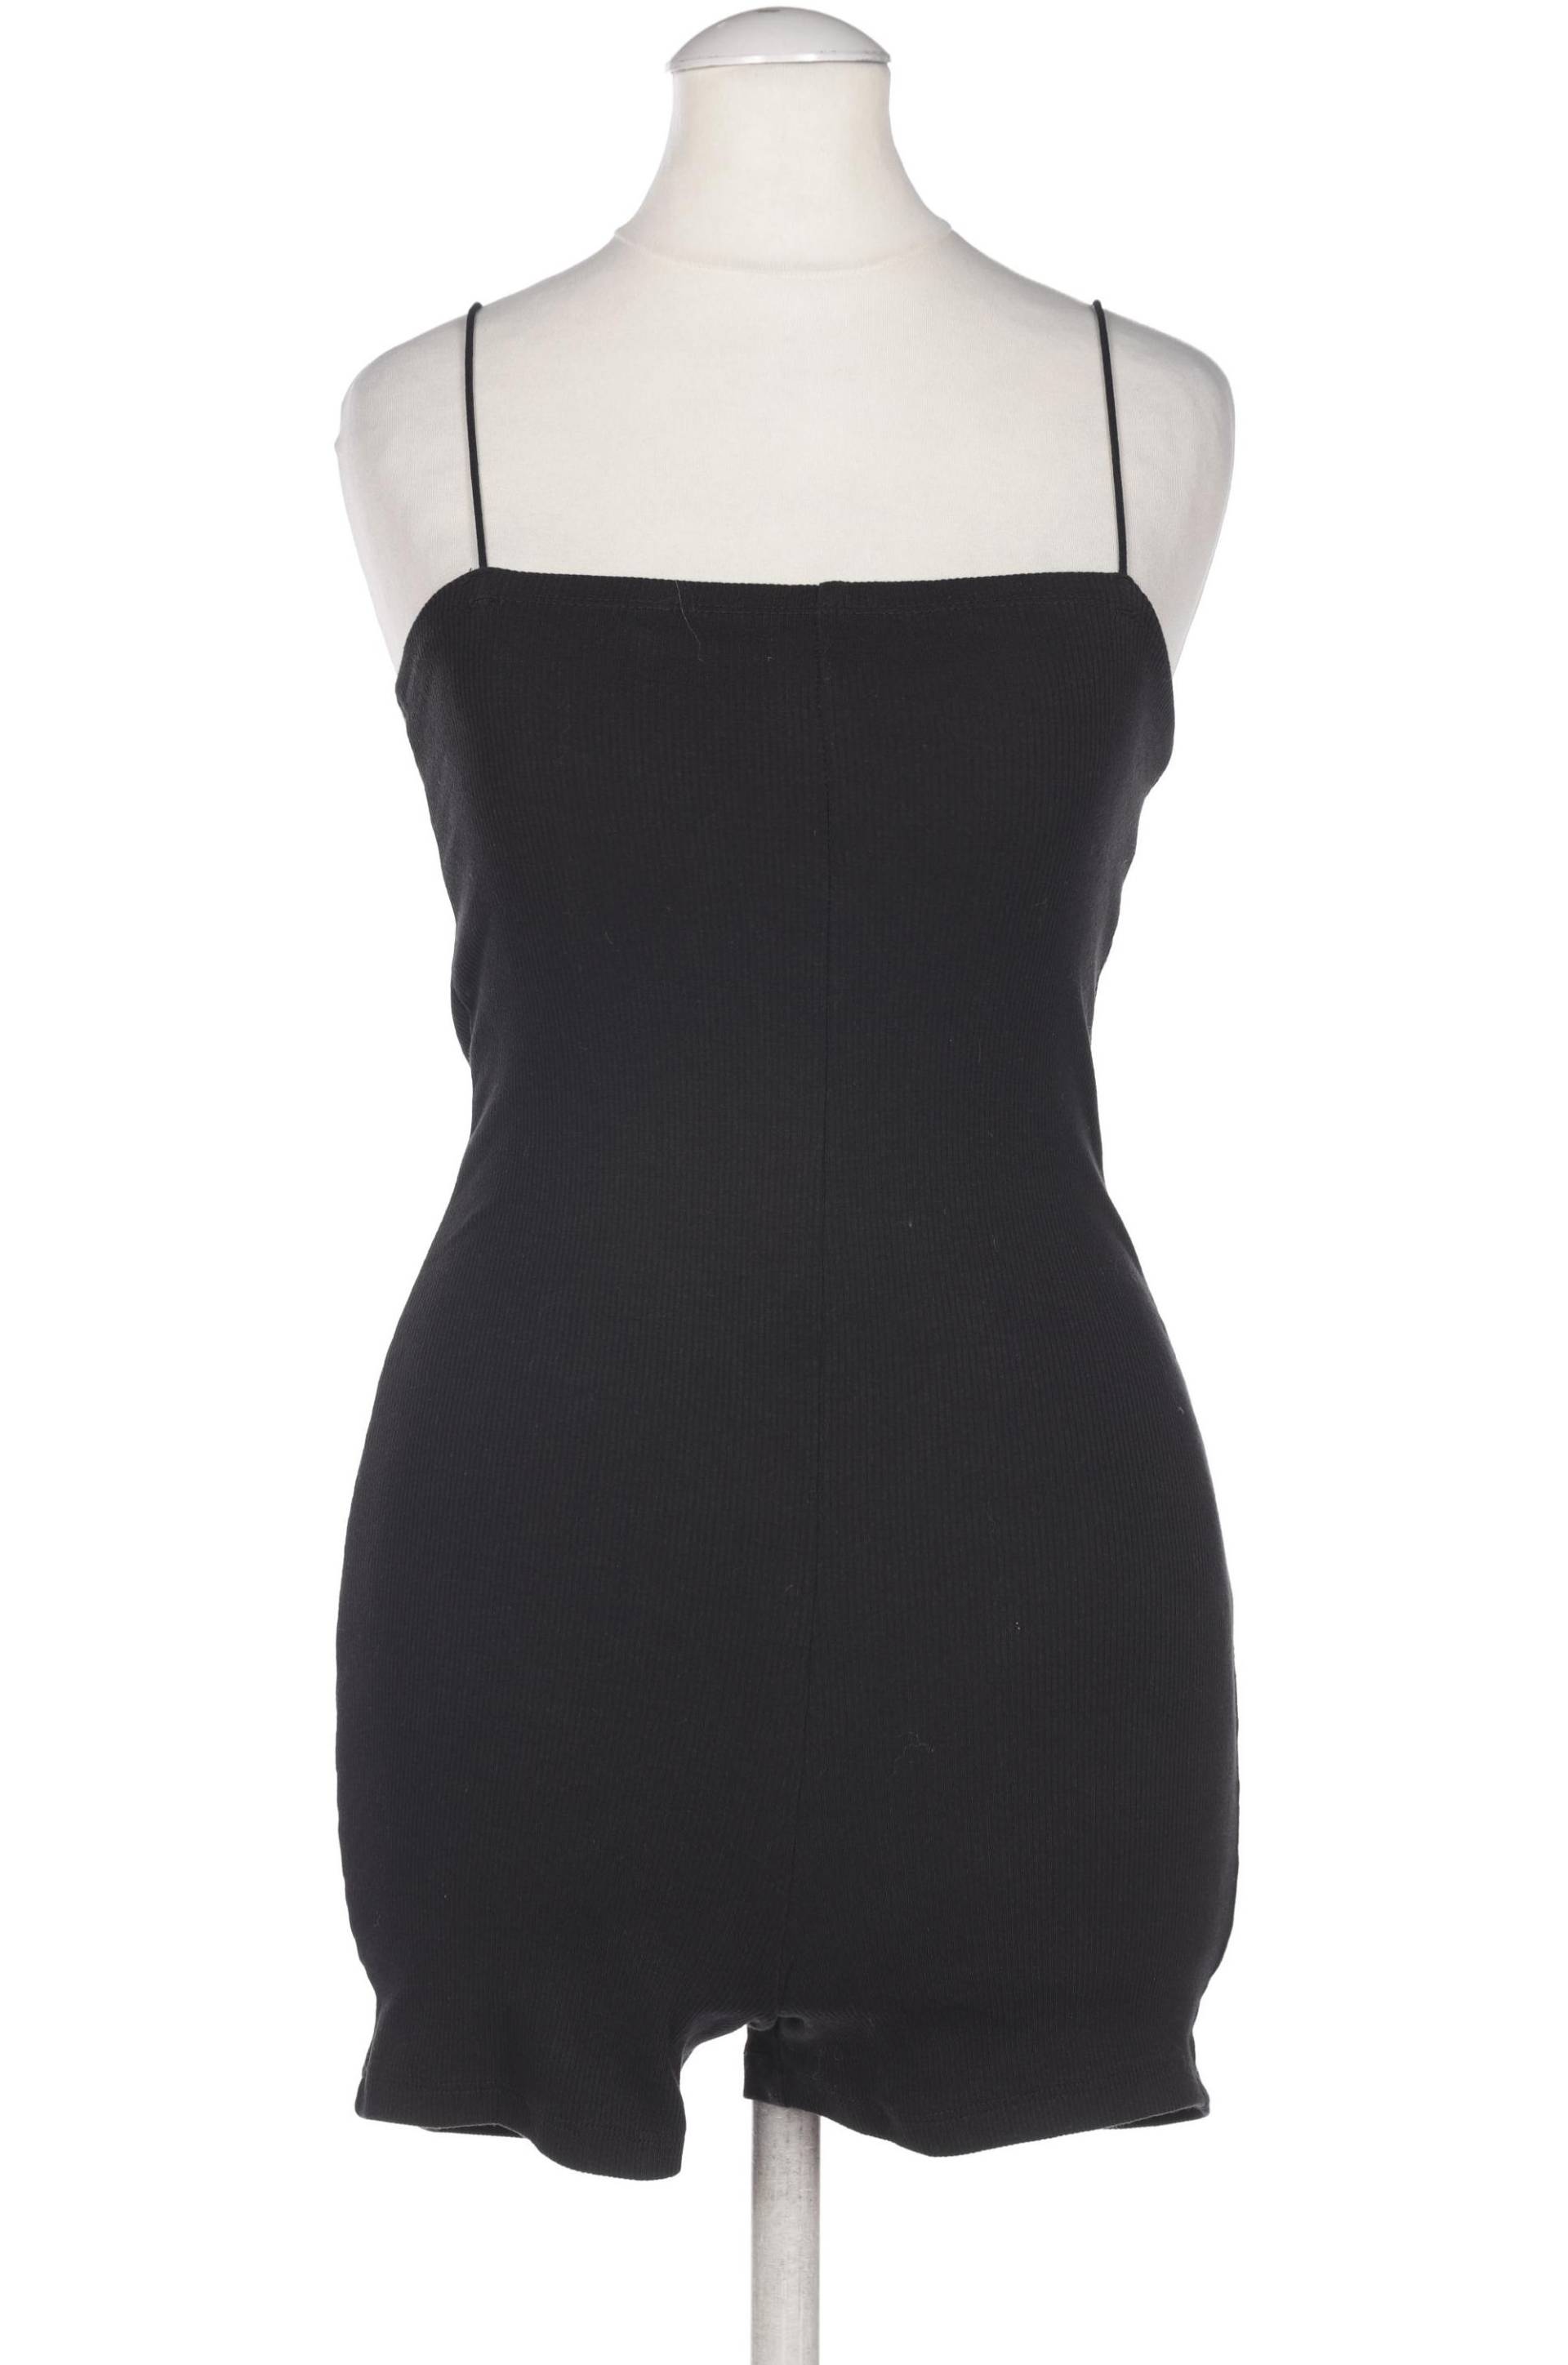 Zara Damen Jumpsuit/Overall, schwarz, Gr. 36 von ZARA